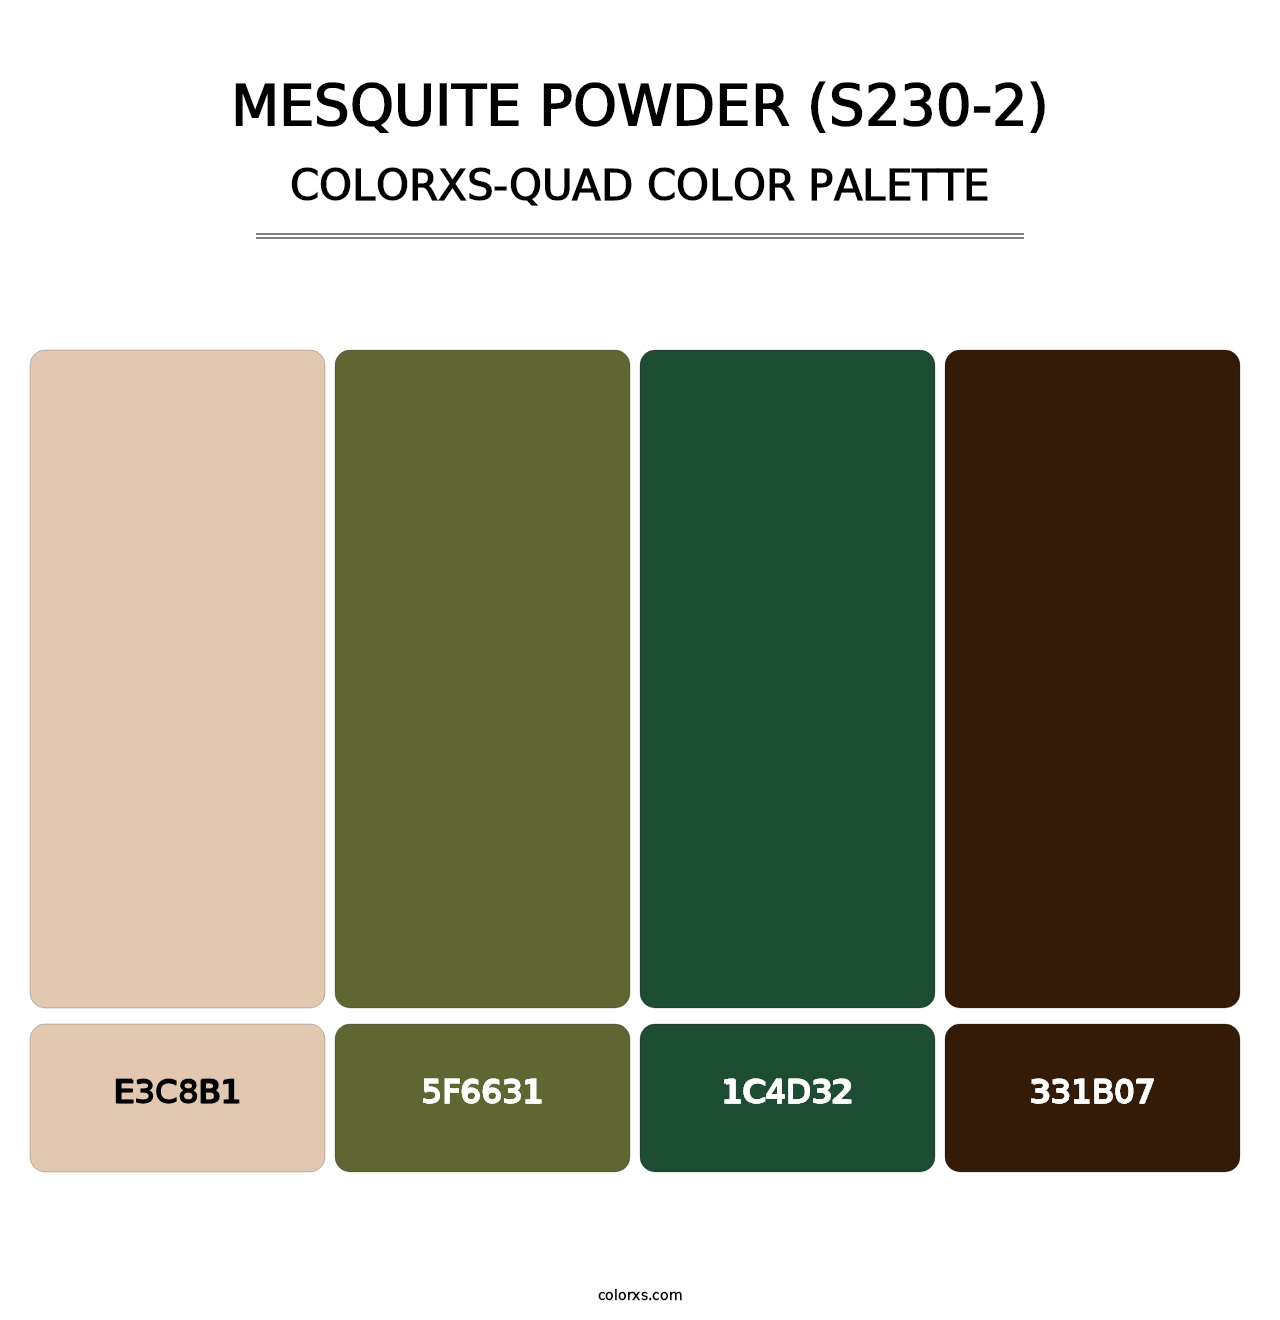 Mesquite Powder (S230-2) - Colorxs Quad Palette